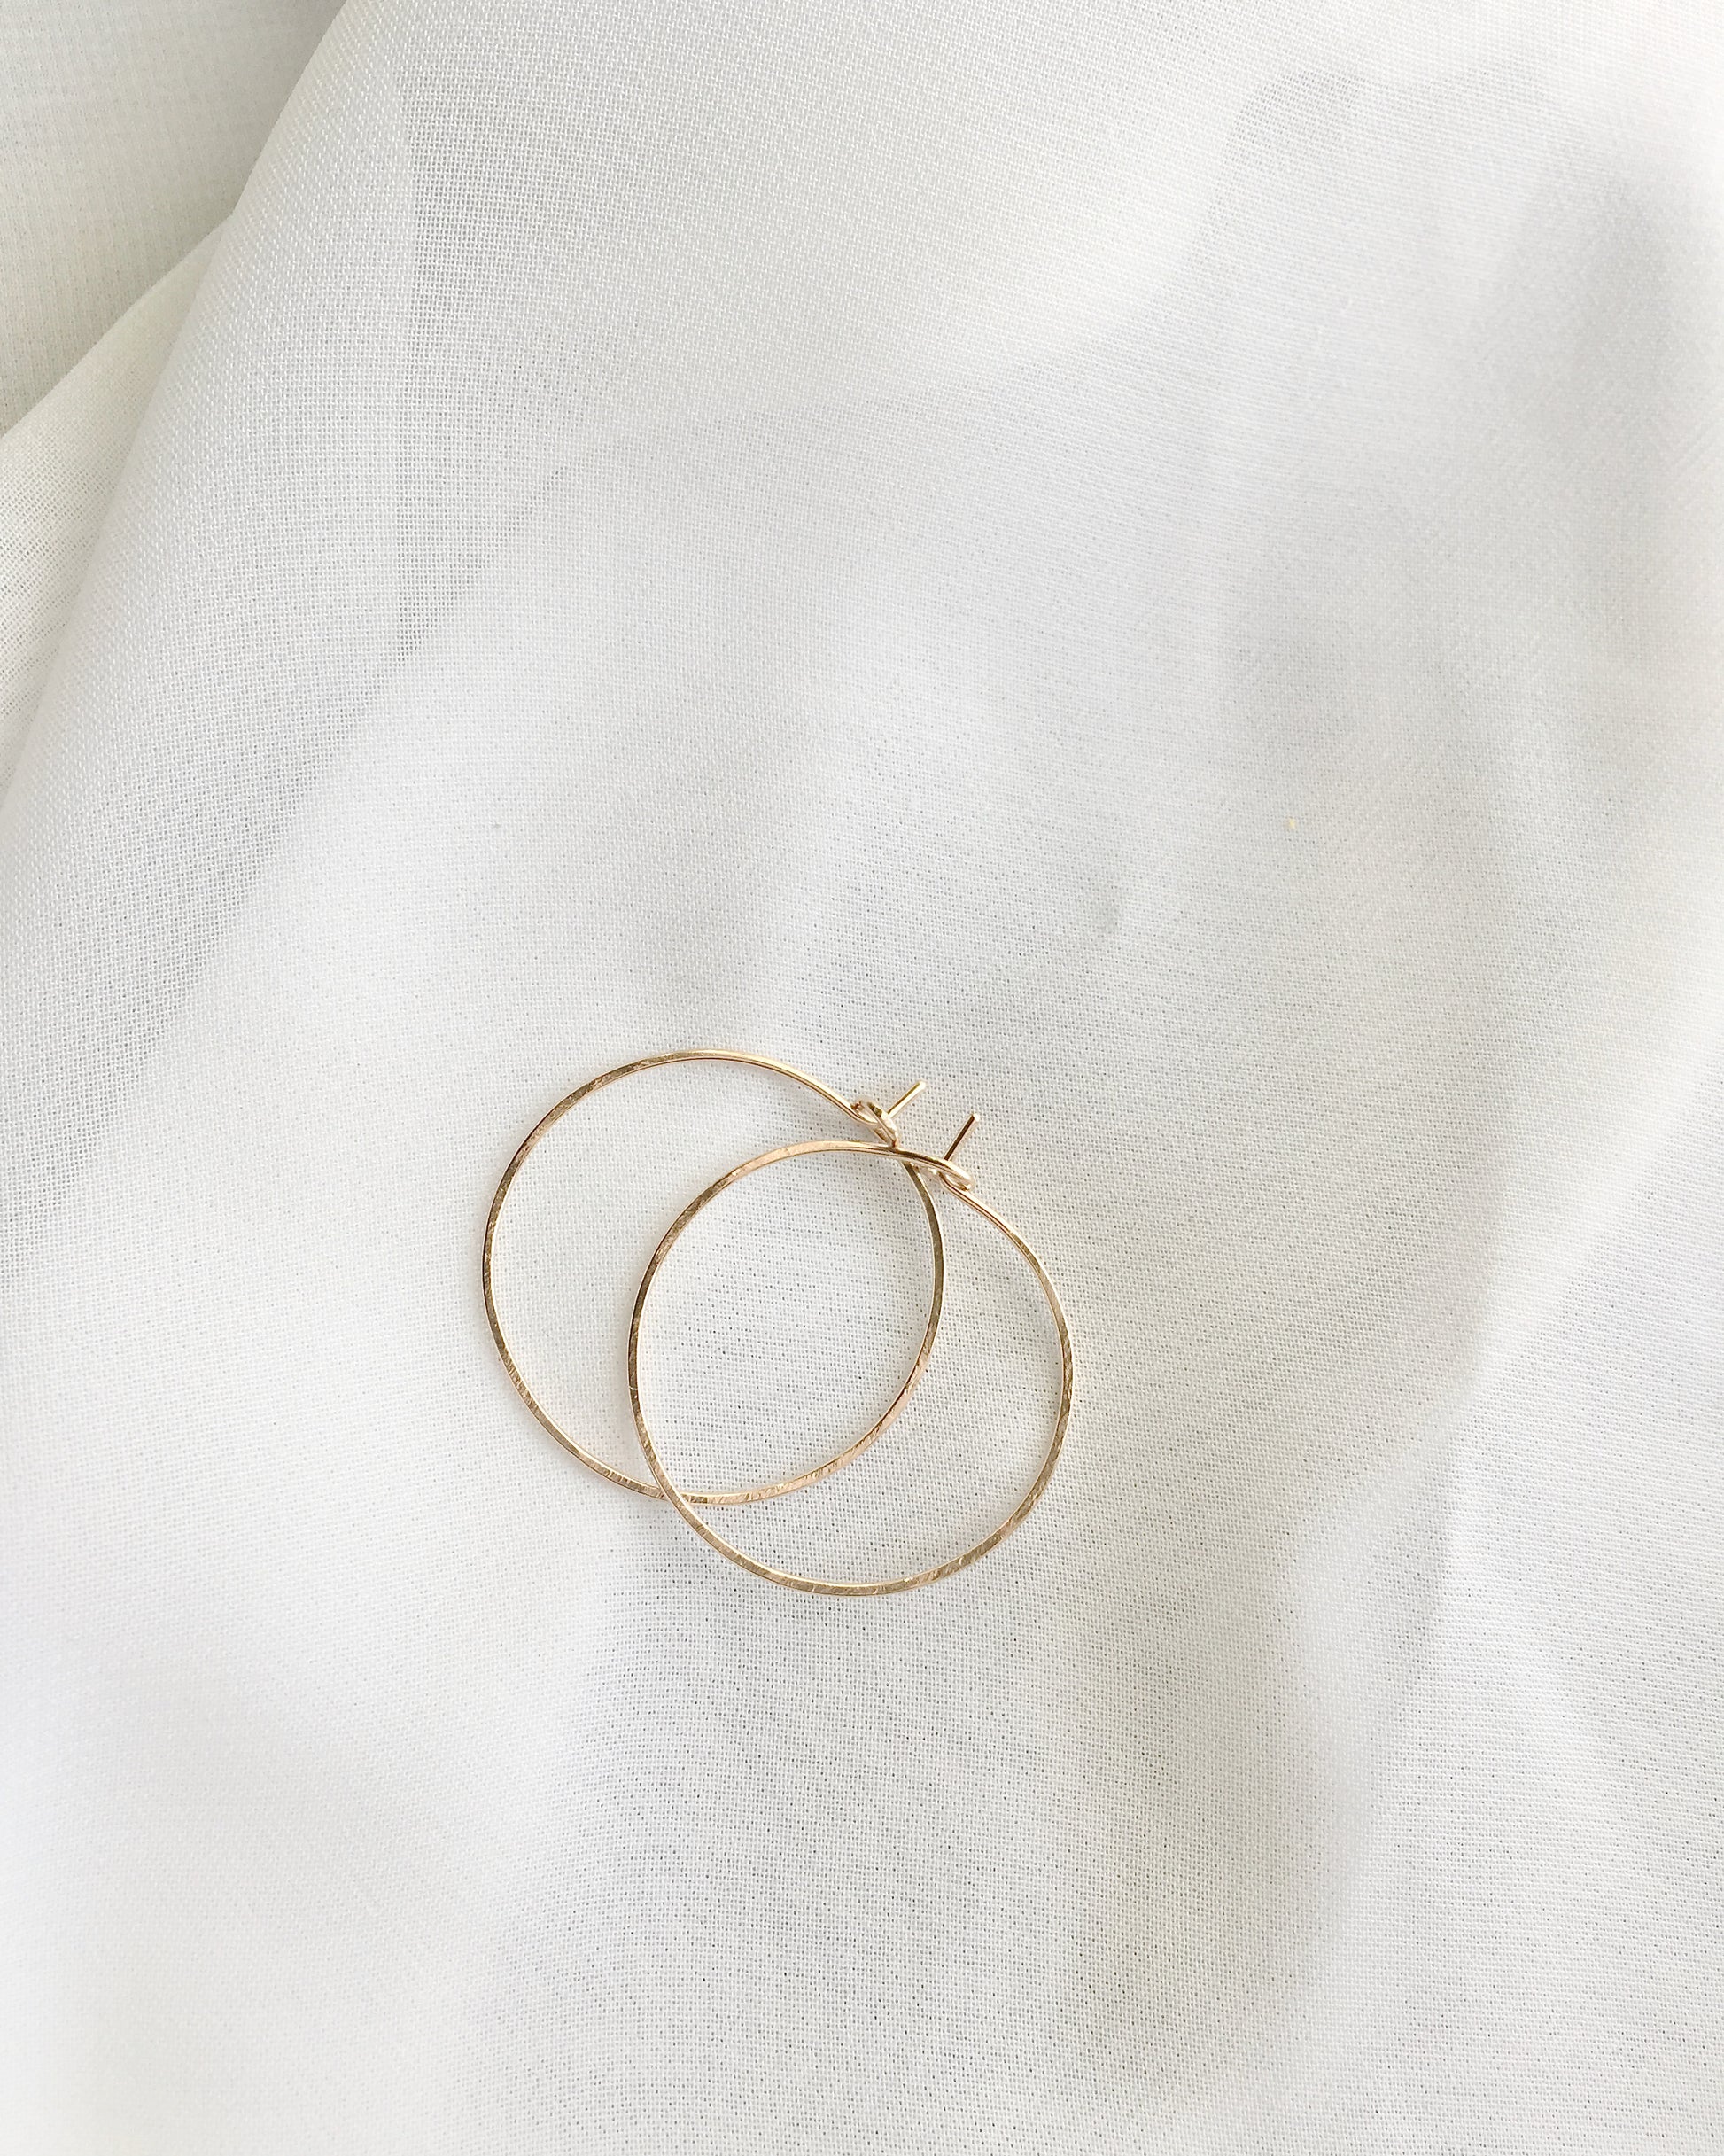 Simple Everyday Hoop Earrings in Gold Filled or Sterling Silver | Thin Hoop Earrings | IB Jewelry